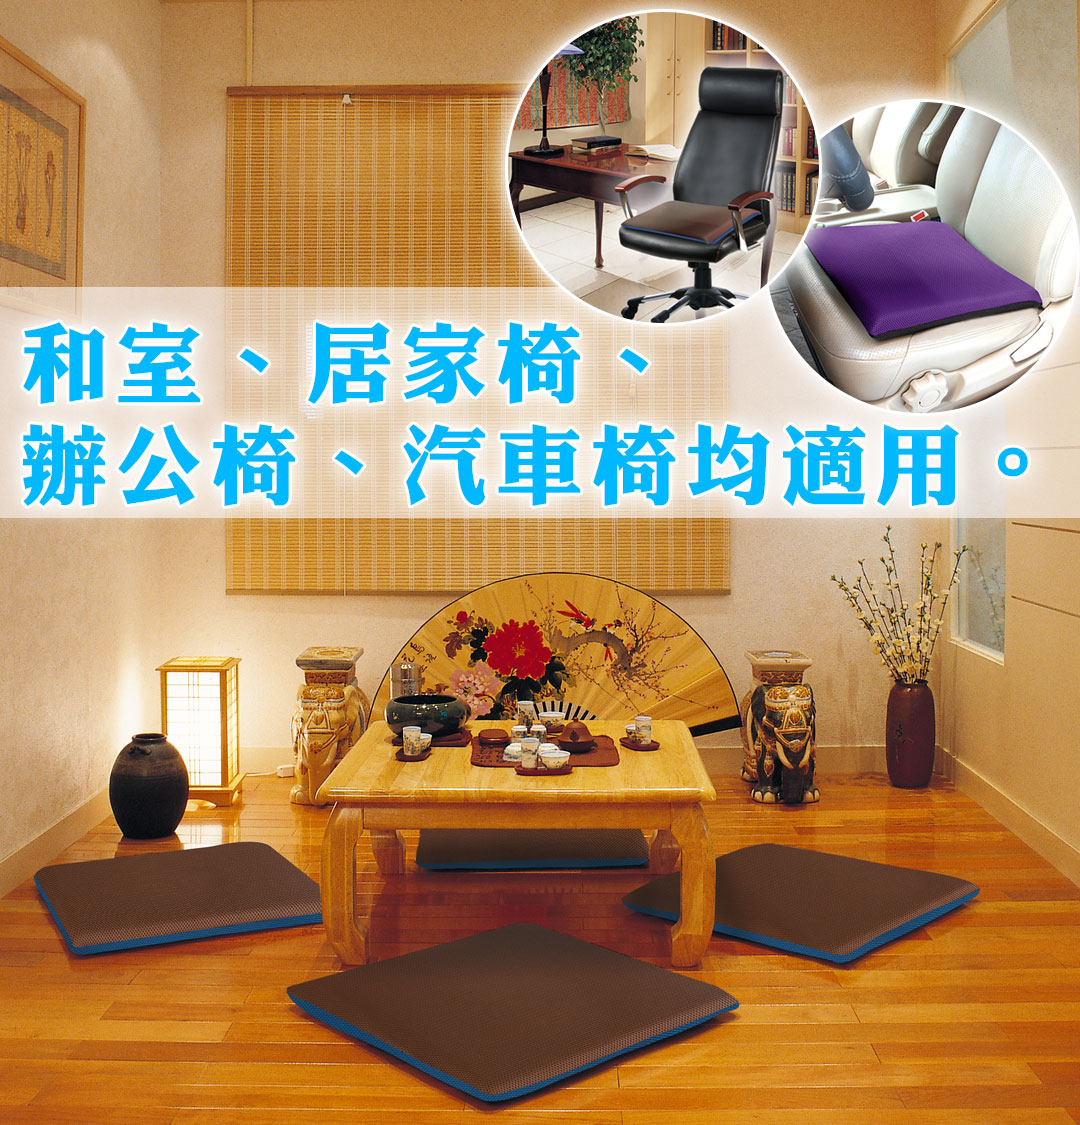 和室、居家椅、
辦公椅、汽車椅均適用。